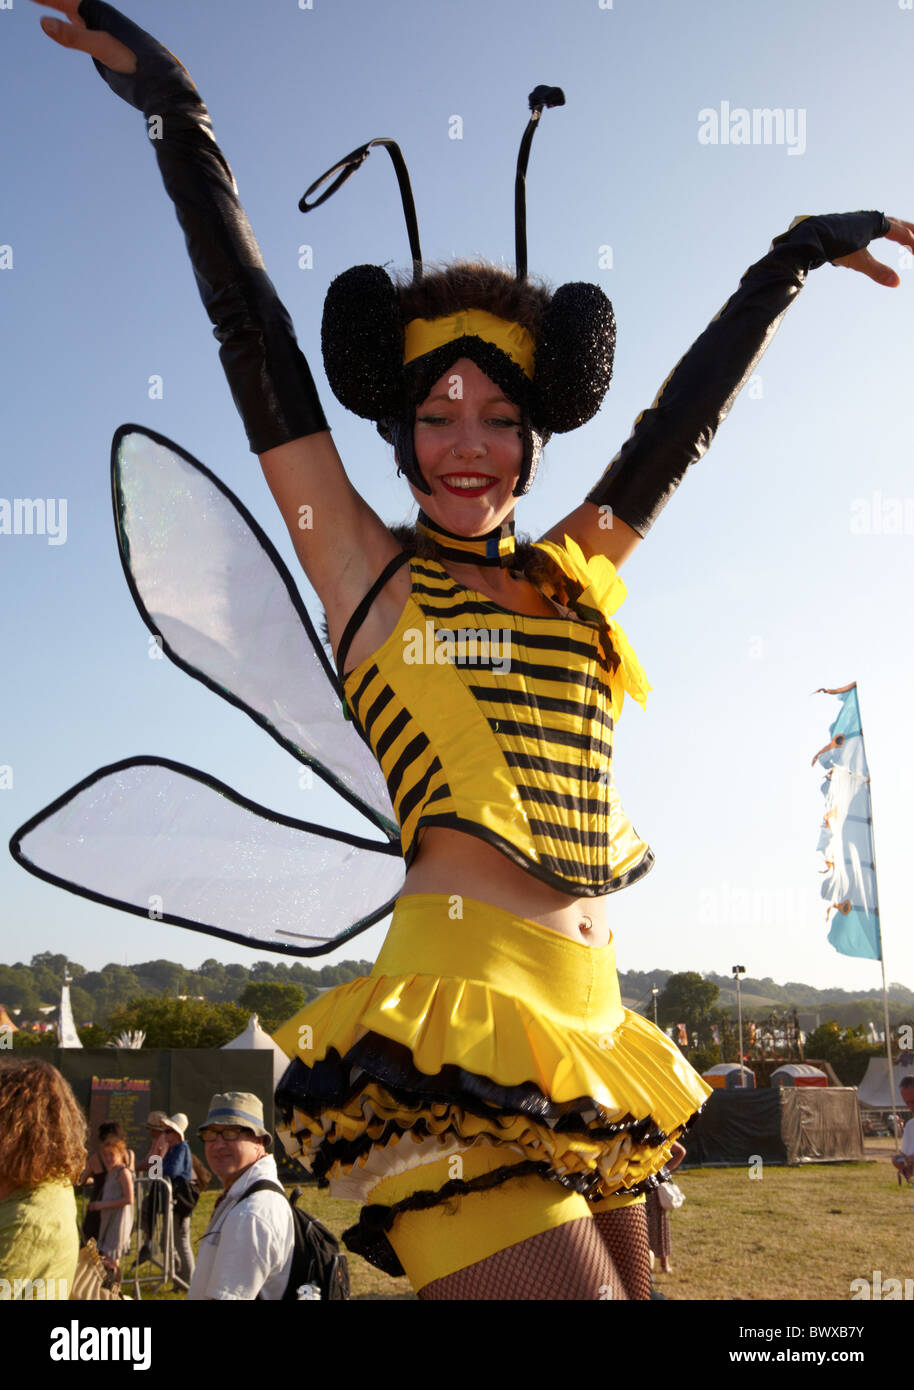 20 ideas de Disfraz apicultor  decoración de unas, disfraz de abeja,  decoraciones de abejas